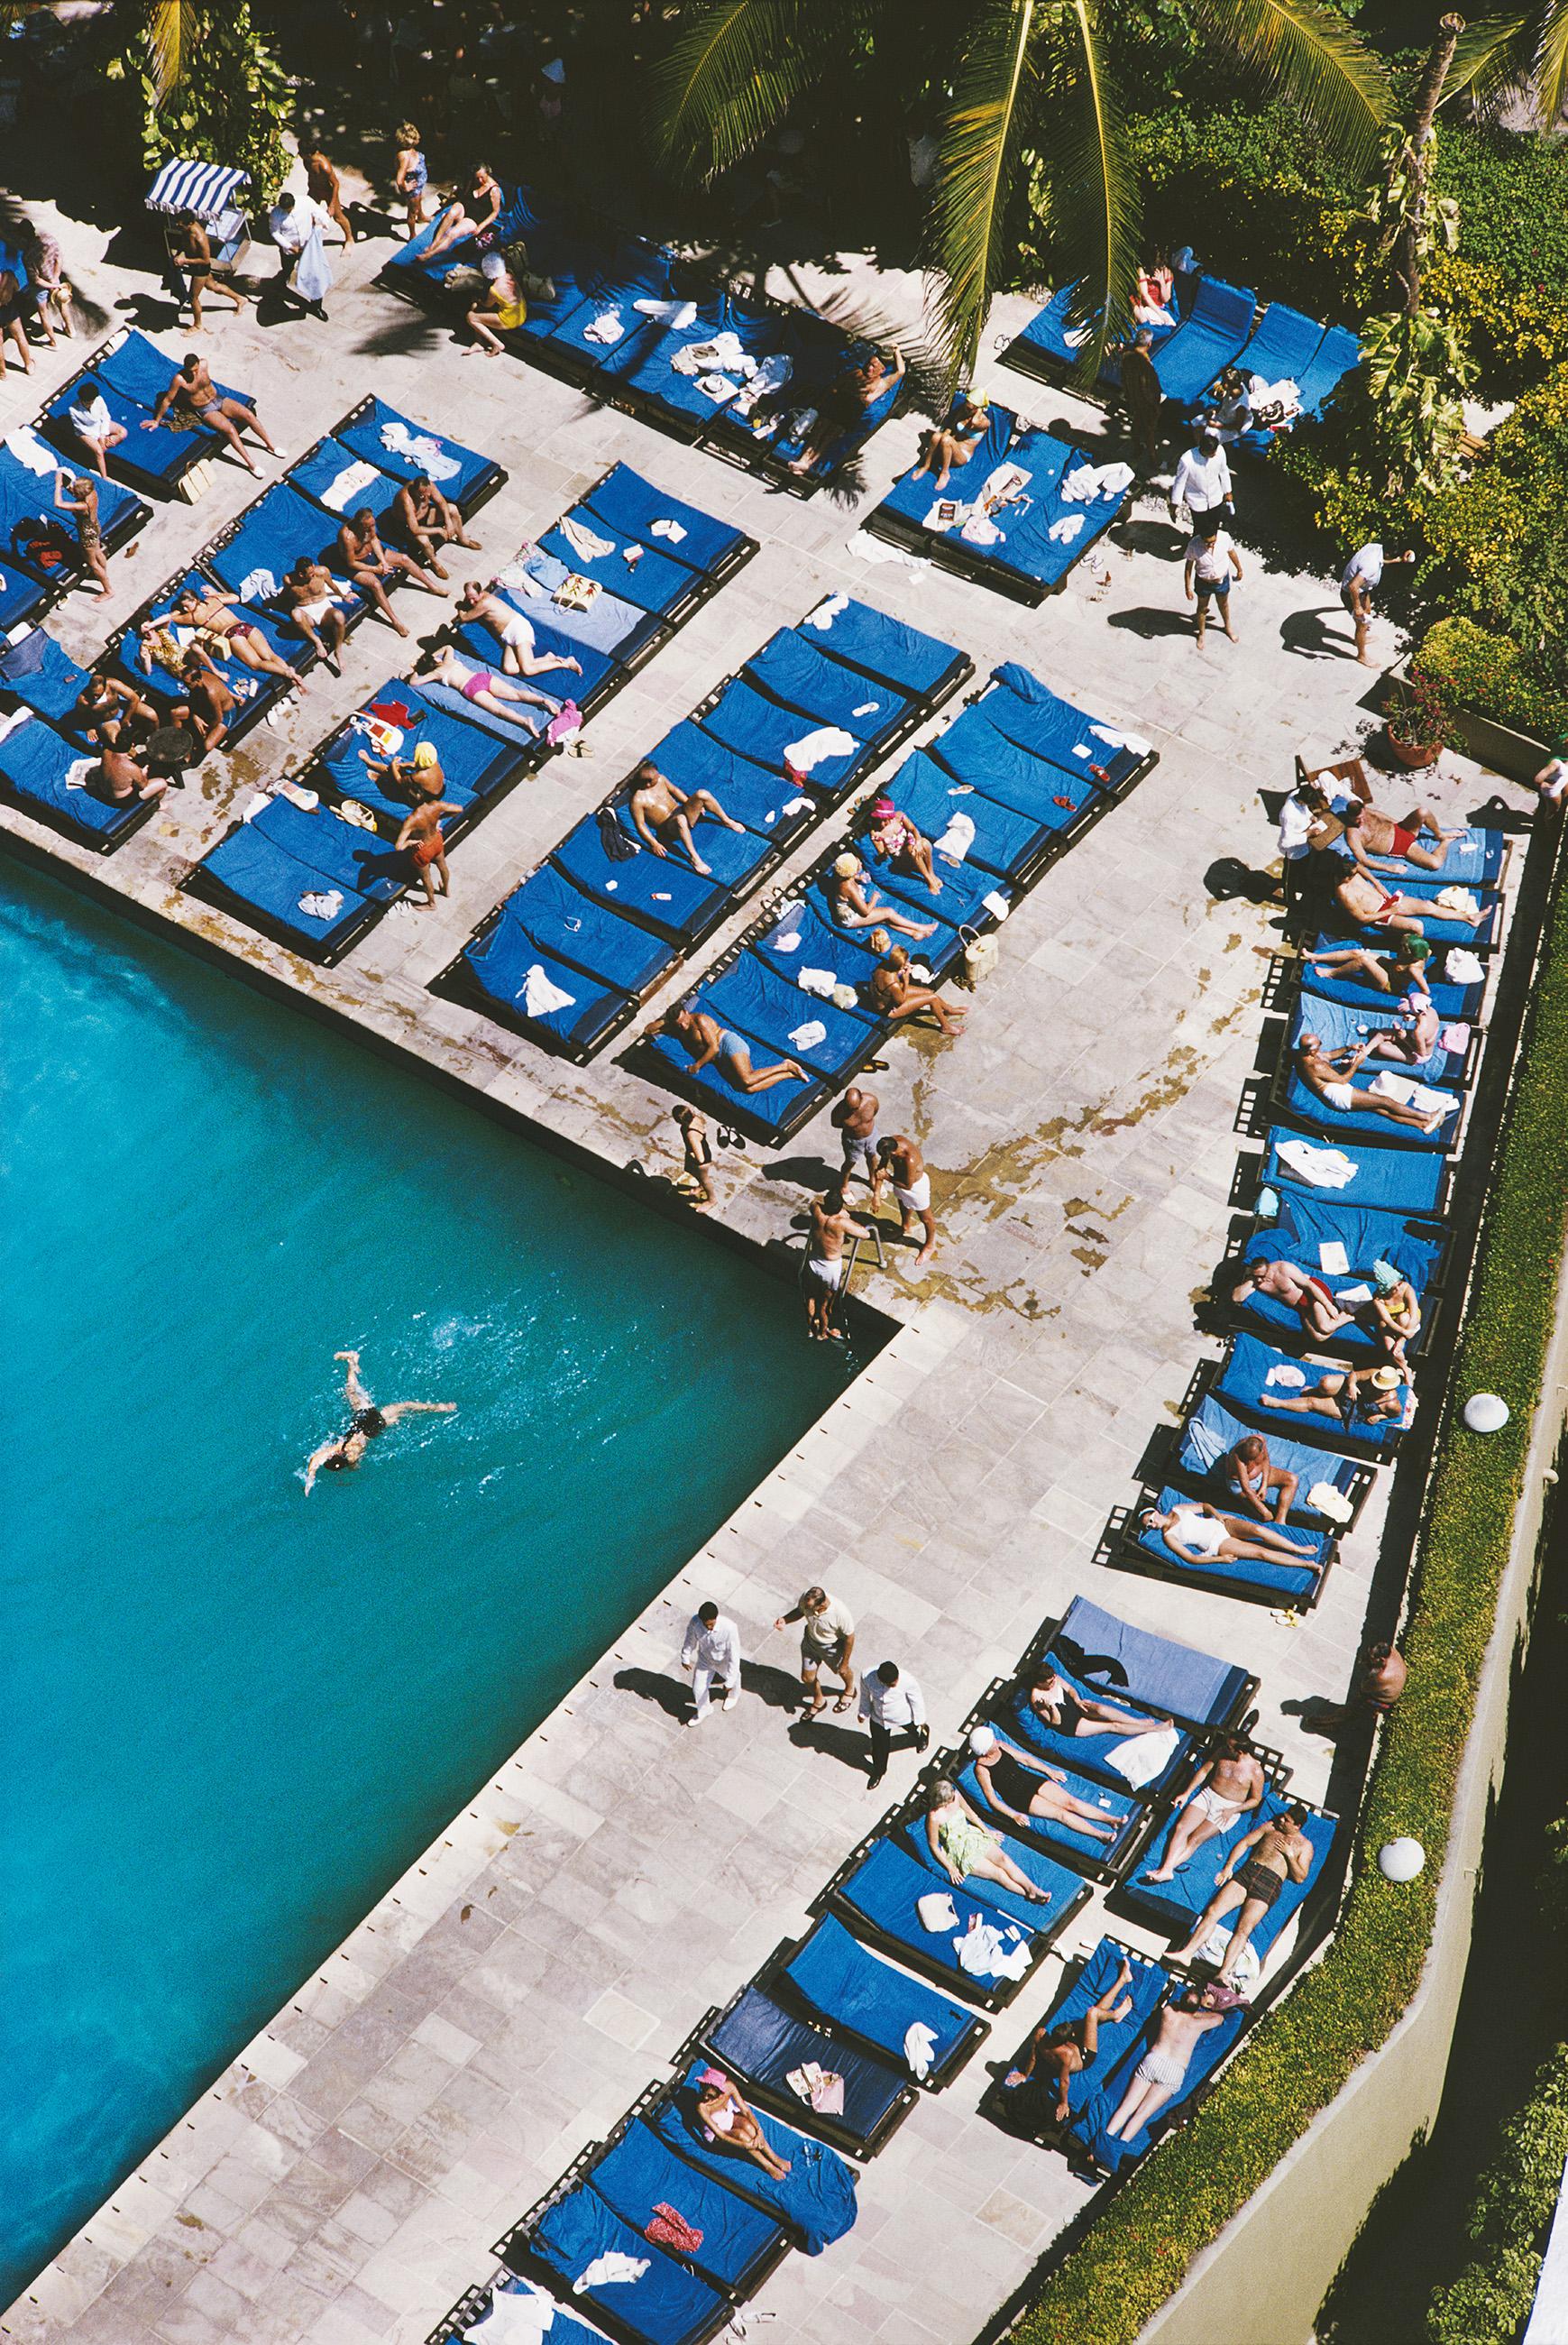 Acapulco Urlaub
1966
Chromogener Lambda-Druck
Nachlassauflage von 150 Stück
Liegestühle an einem Swimmingpool in Acapulco, Februar 1966. (Foto: Slim Aarons/Hulton Archive/Getty Images)

Nachlassgestempelte und handnummerierte Auflage von 150 Stück